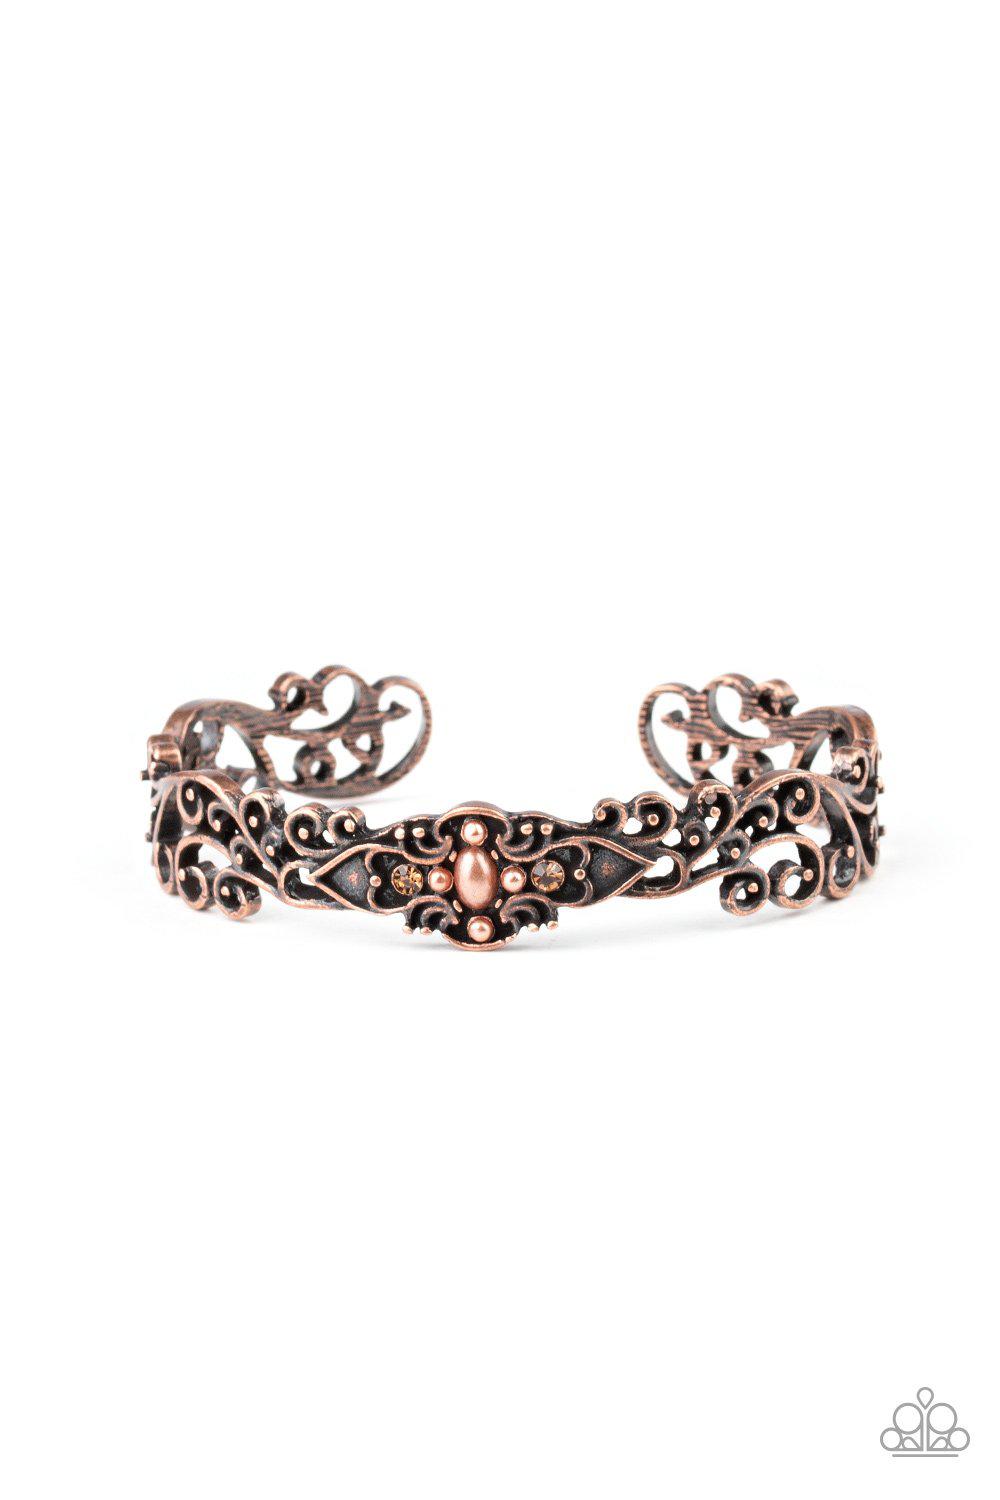 Victorian Vines Copper Cuff Bracelet - Paparazzi Accessories-CarasShop.com - $5 Jewelry by Cara Jewels